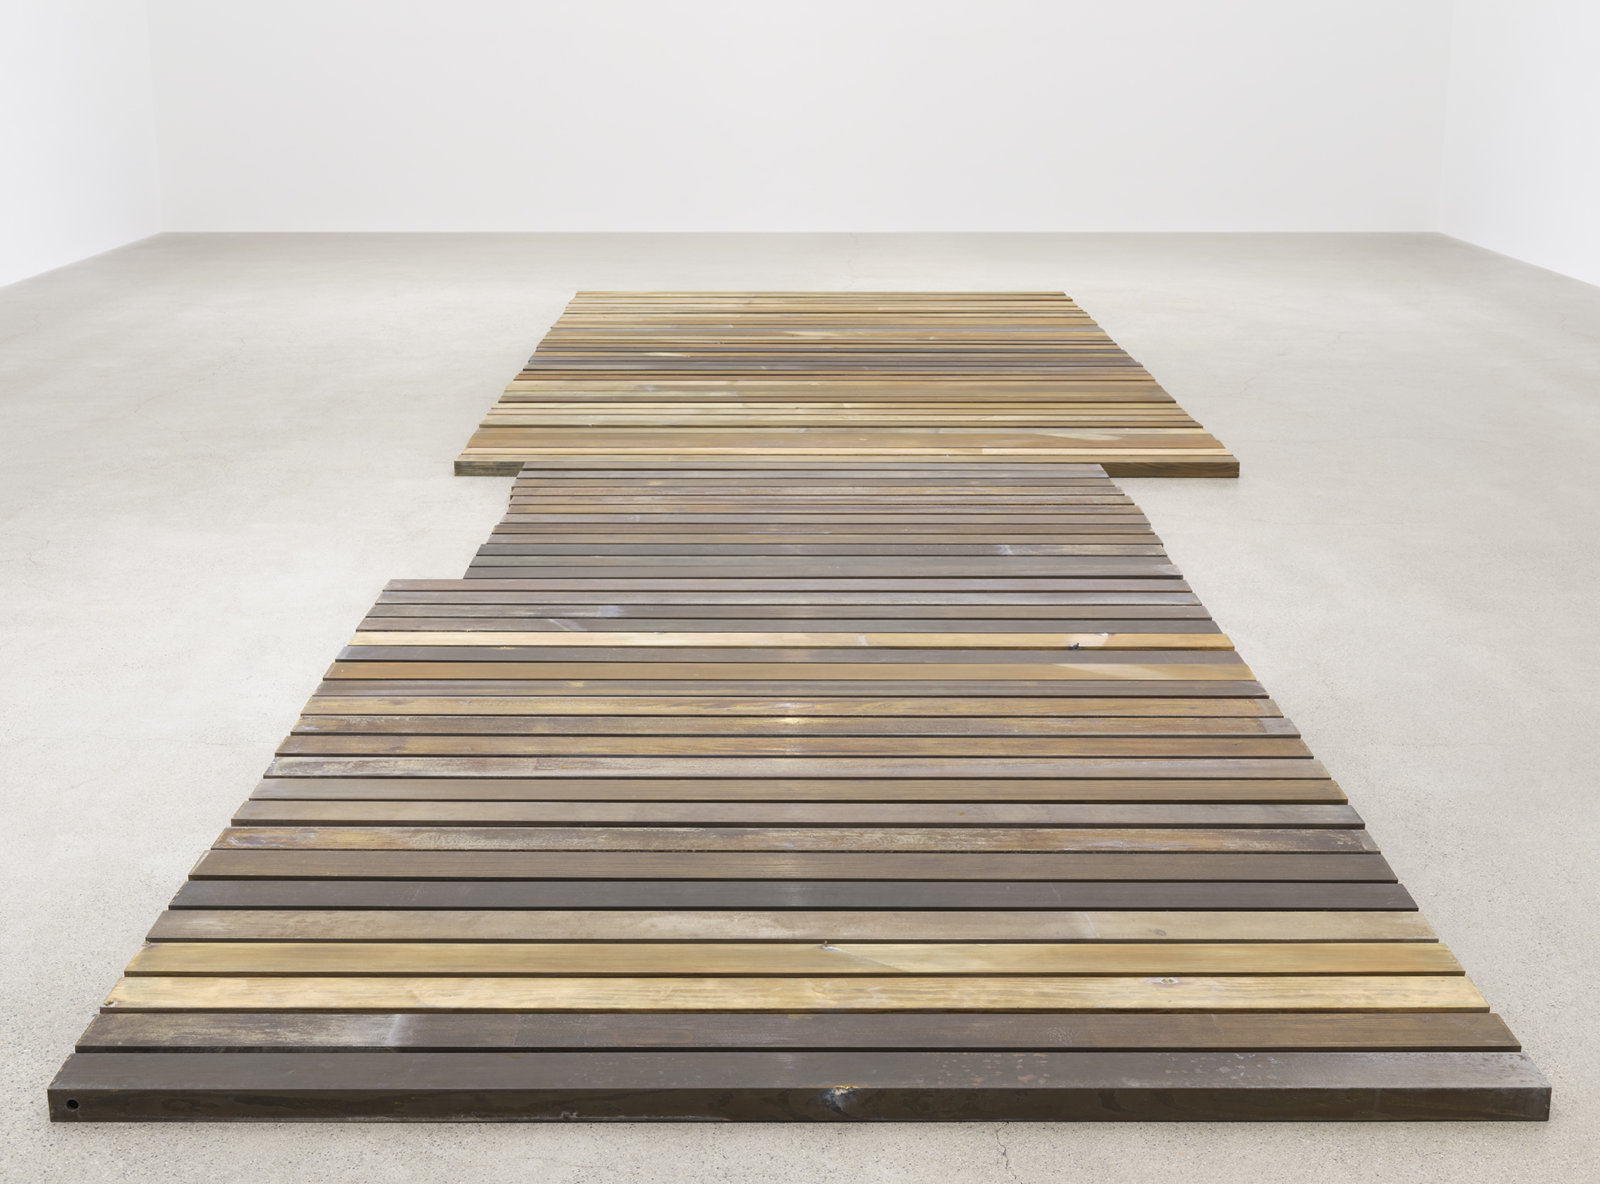 Geoffrey Farmer, 70 Planks, 2021, acid-etched brass planks, 3 x 100 x 321 in. (6 x 253 x 815 cm)